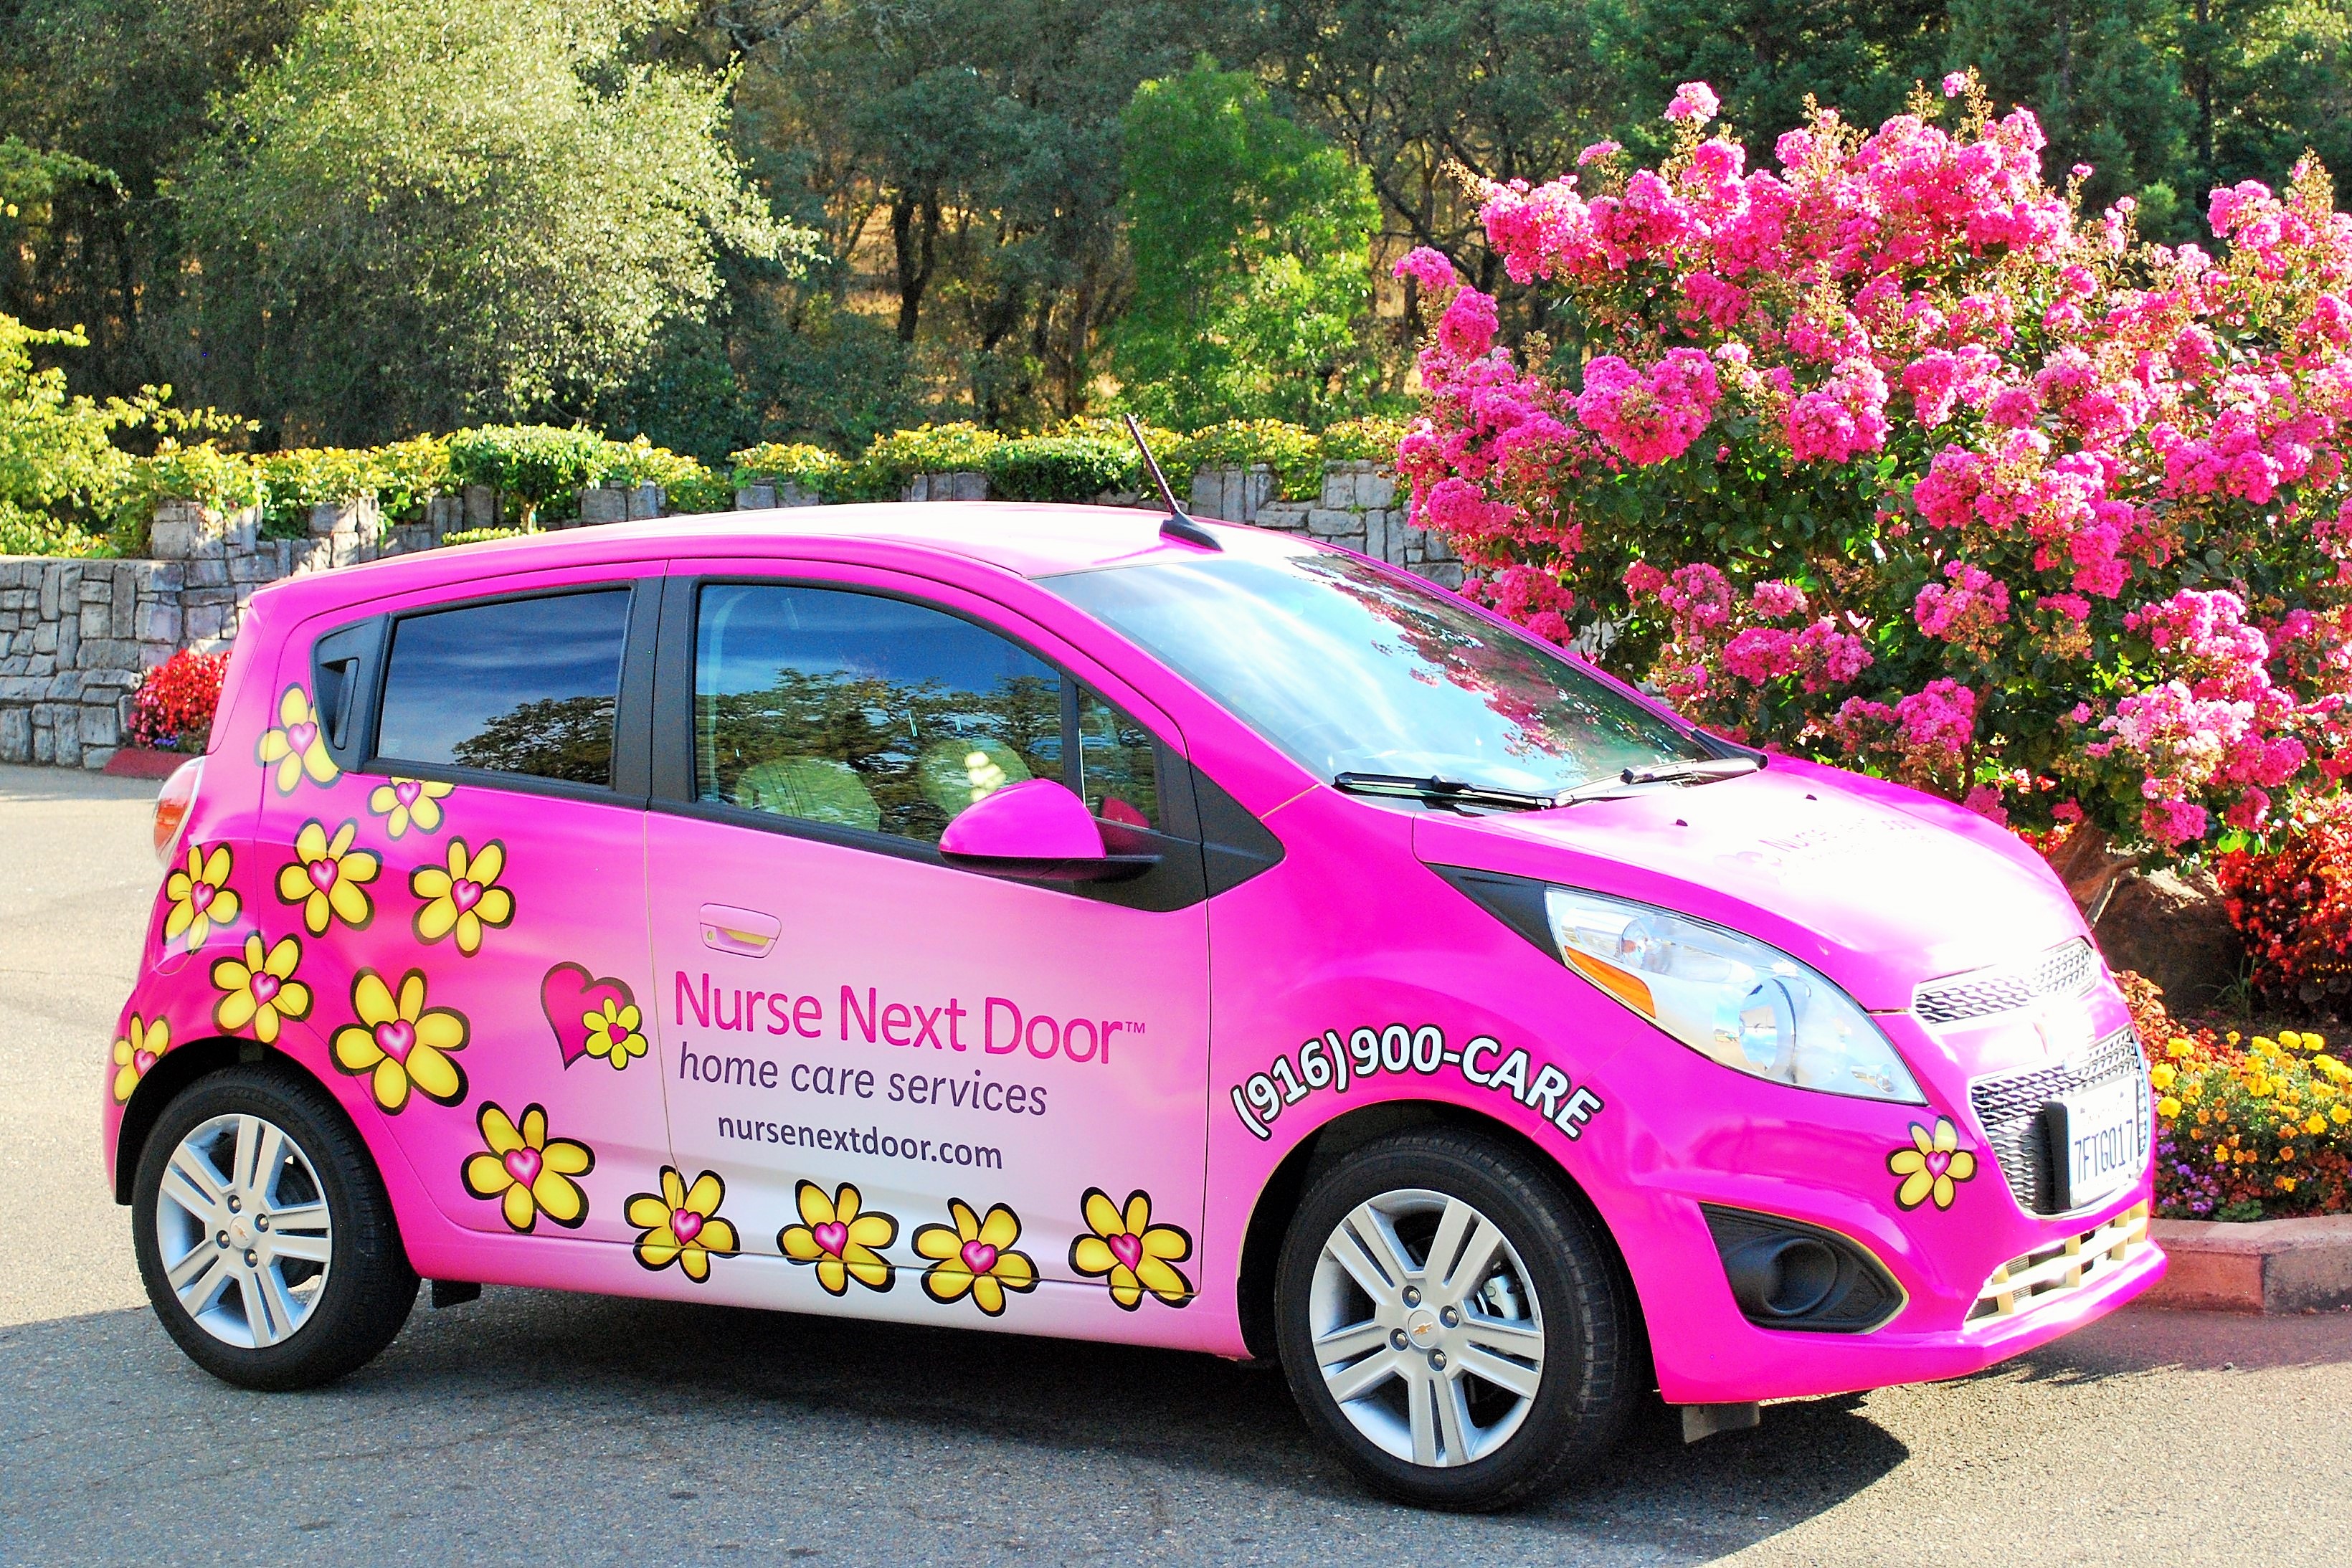 Nurse Next Door Home Care Services - El Dorado, Sacramento & Placer Counties - El Dorado Hills, CA